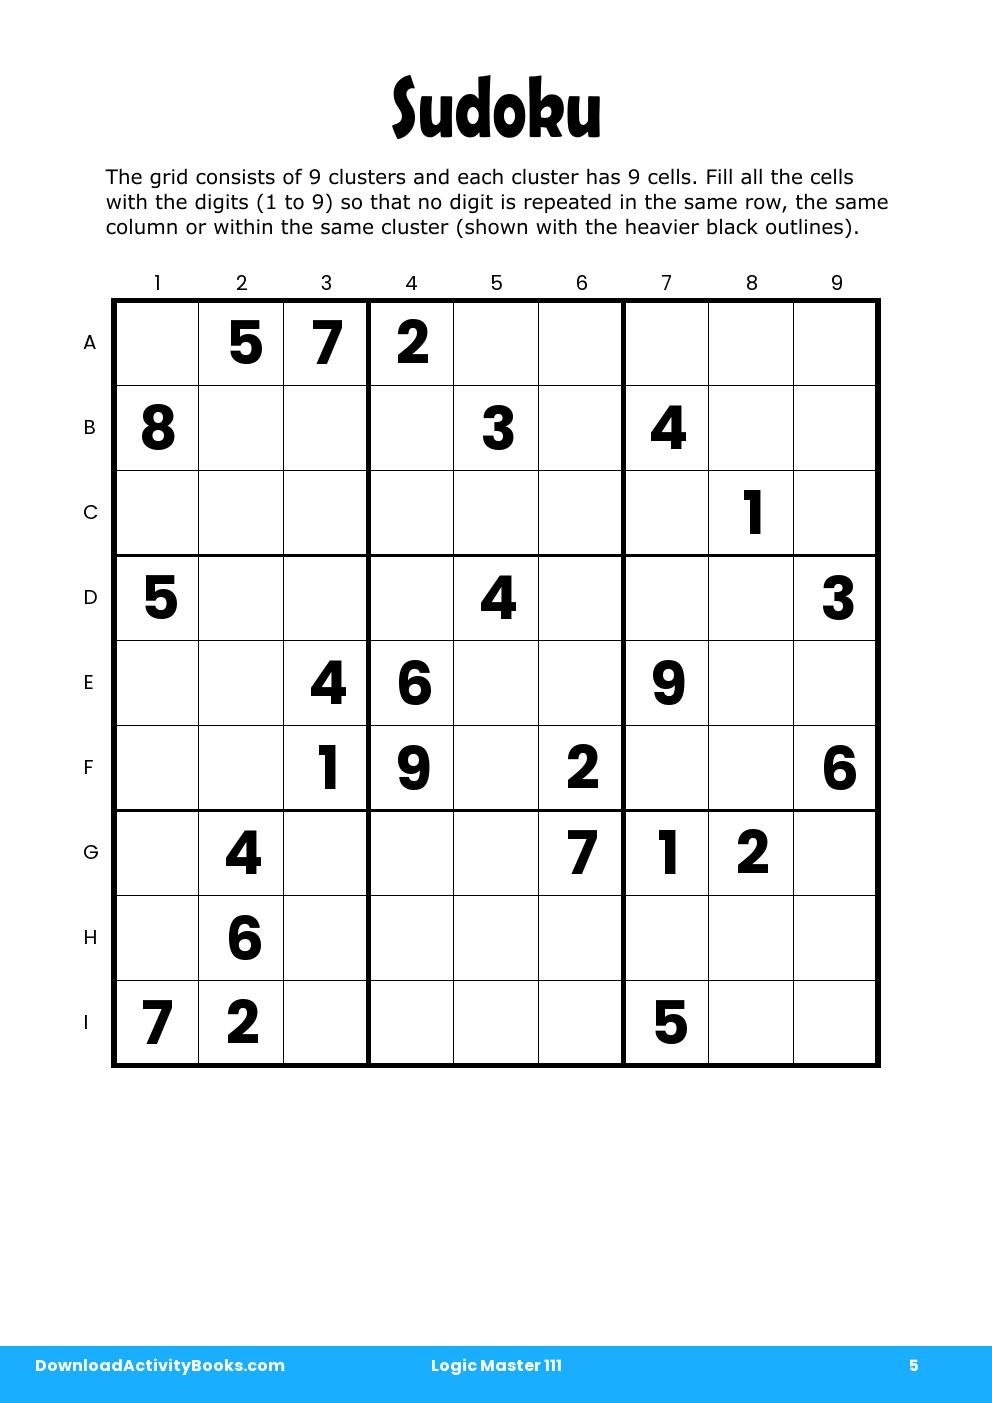 Sudoku in Logic Master 111